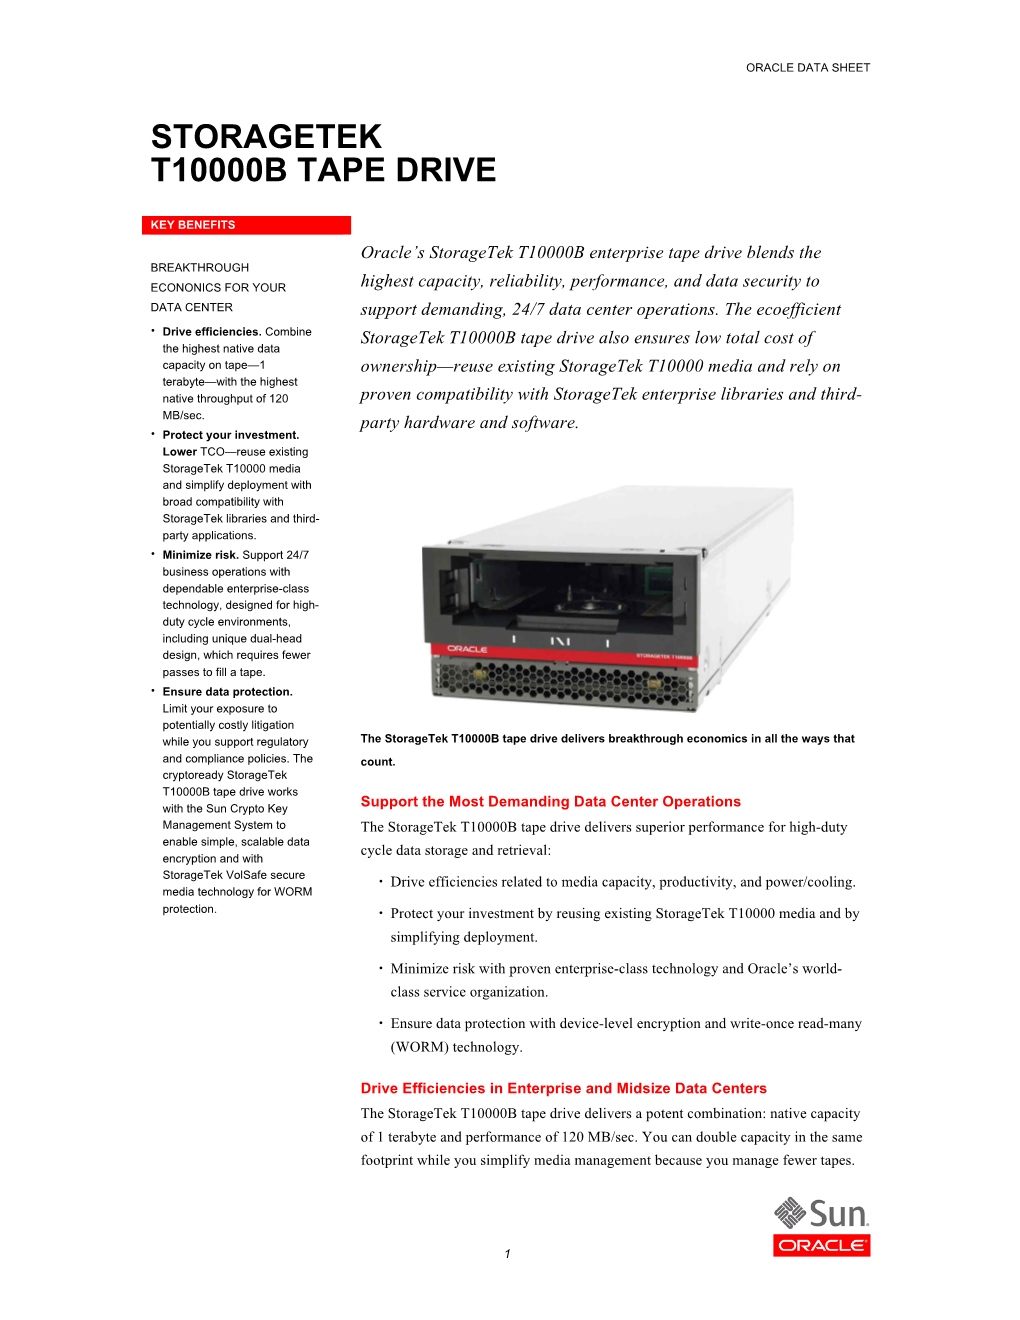 Storagetek T1000B Tape Drive Data Sheet